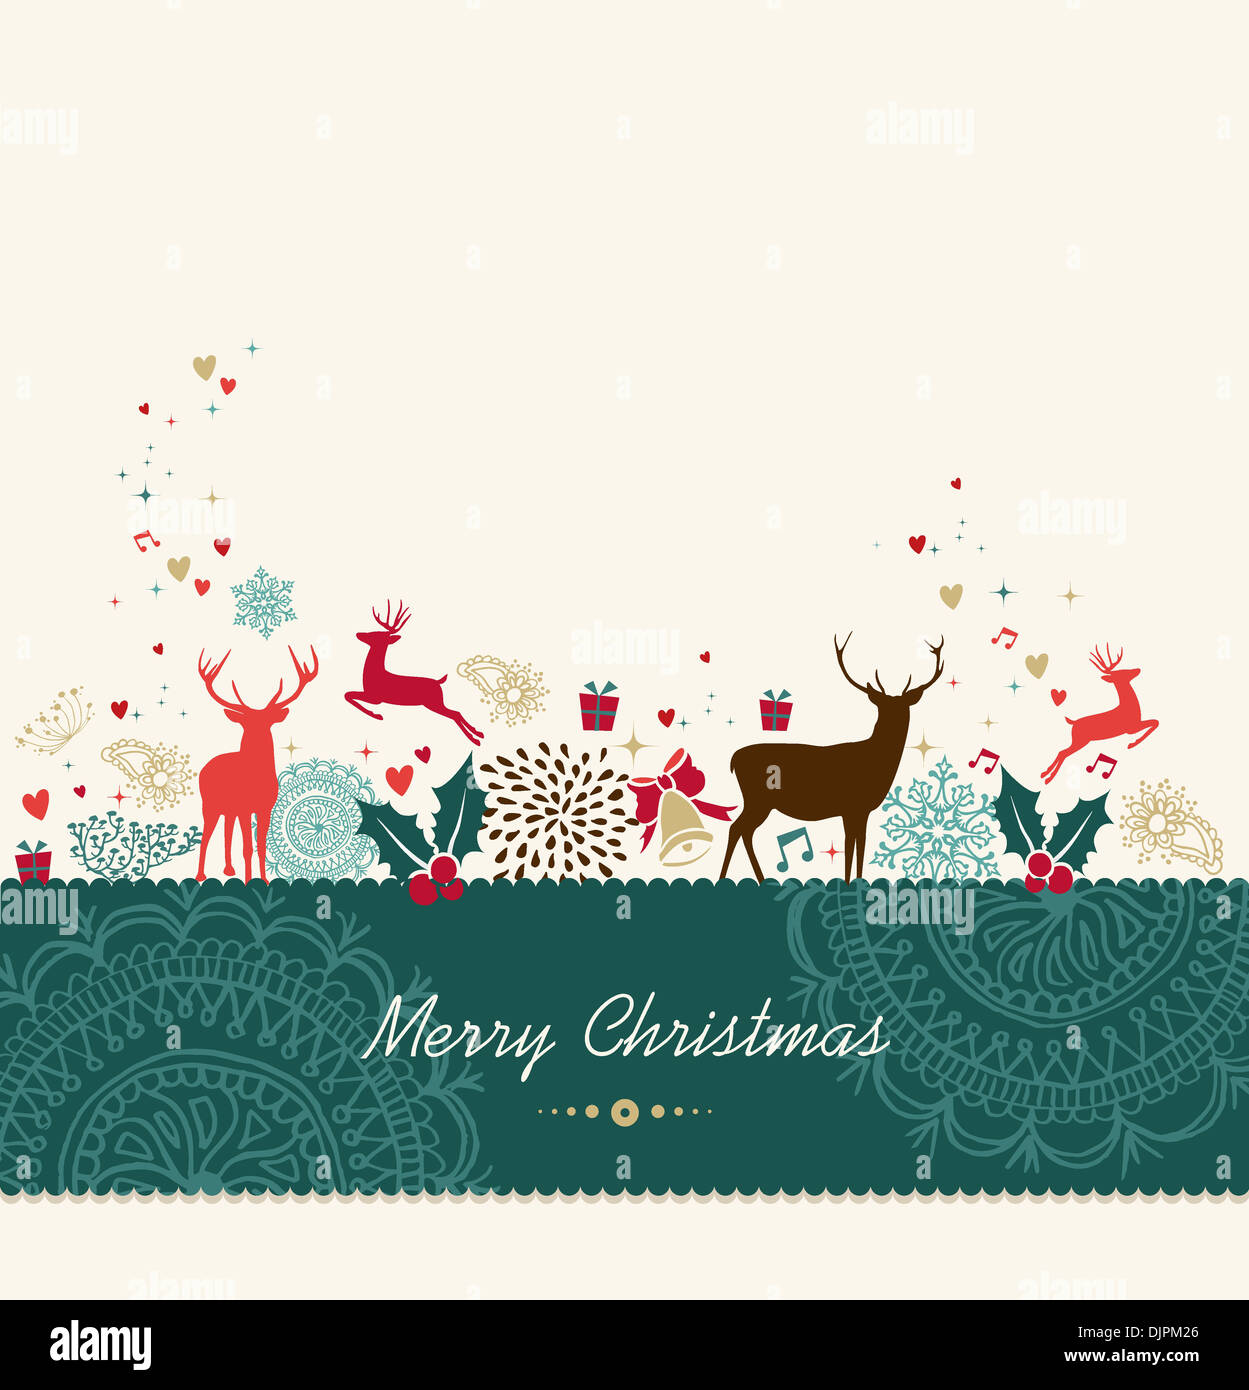 Merry Christmas card sfondo con vintage elementi vacanze composizione. File vettoriale organizzati in strati per operazioni di editing semplici. Foto Stock